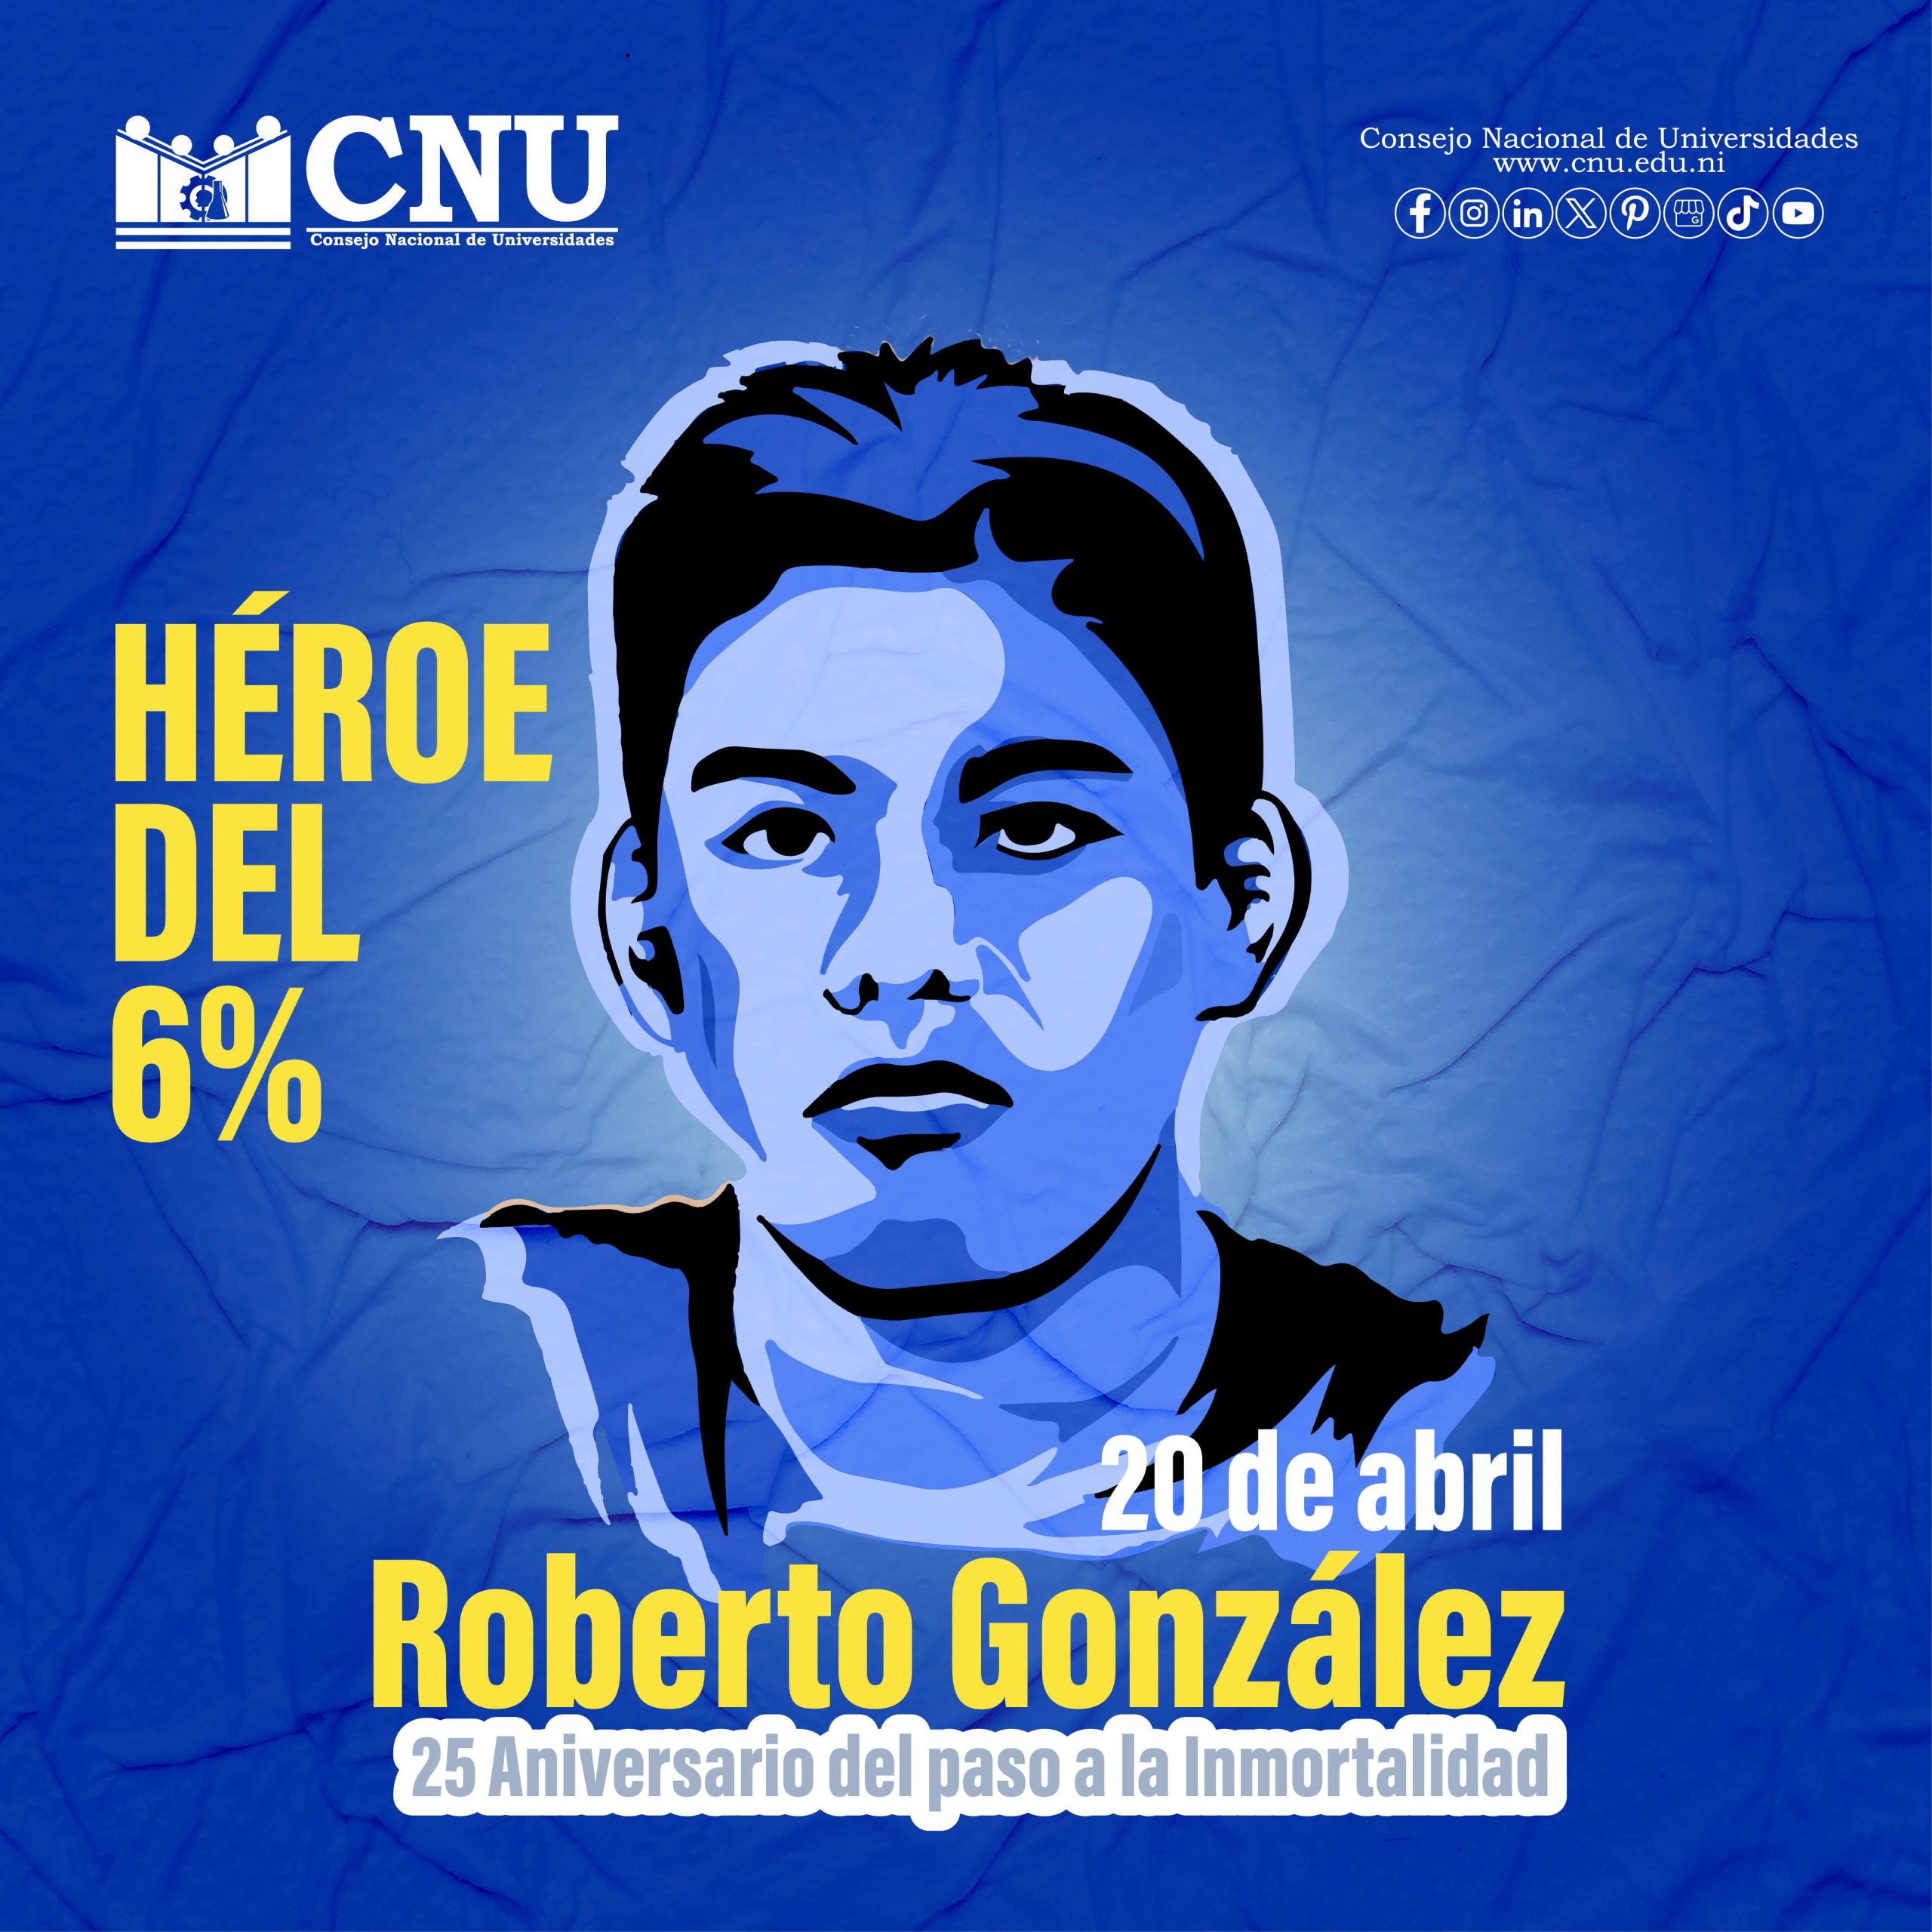 25 aniversario del paso a la inmortalidad del Mártir estudiantil Roberto González Herrera